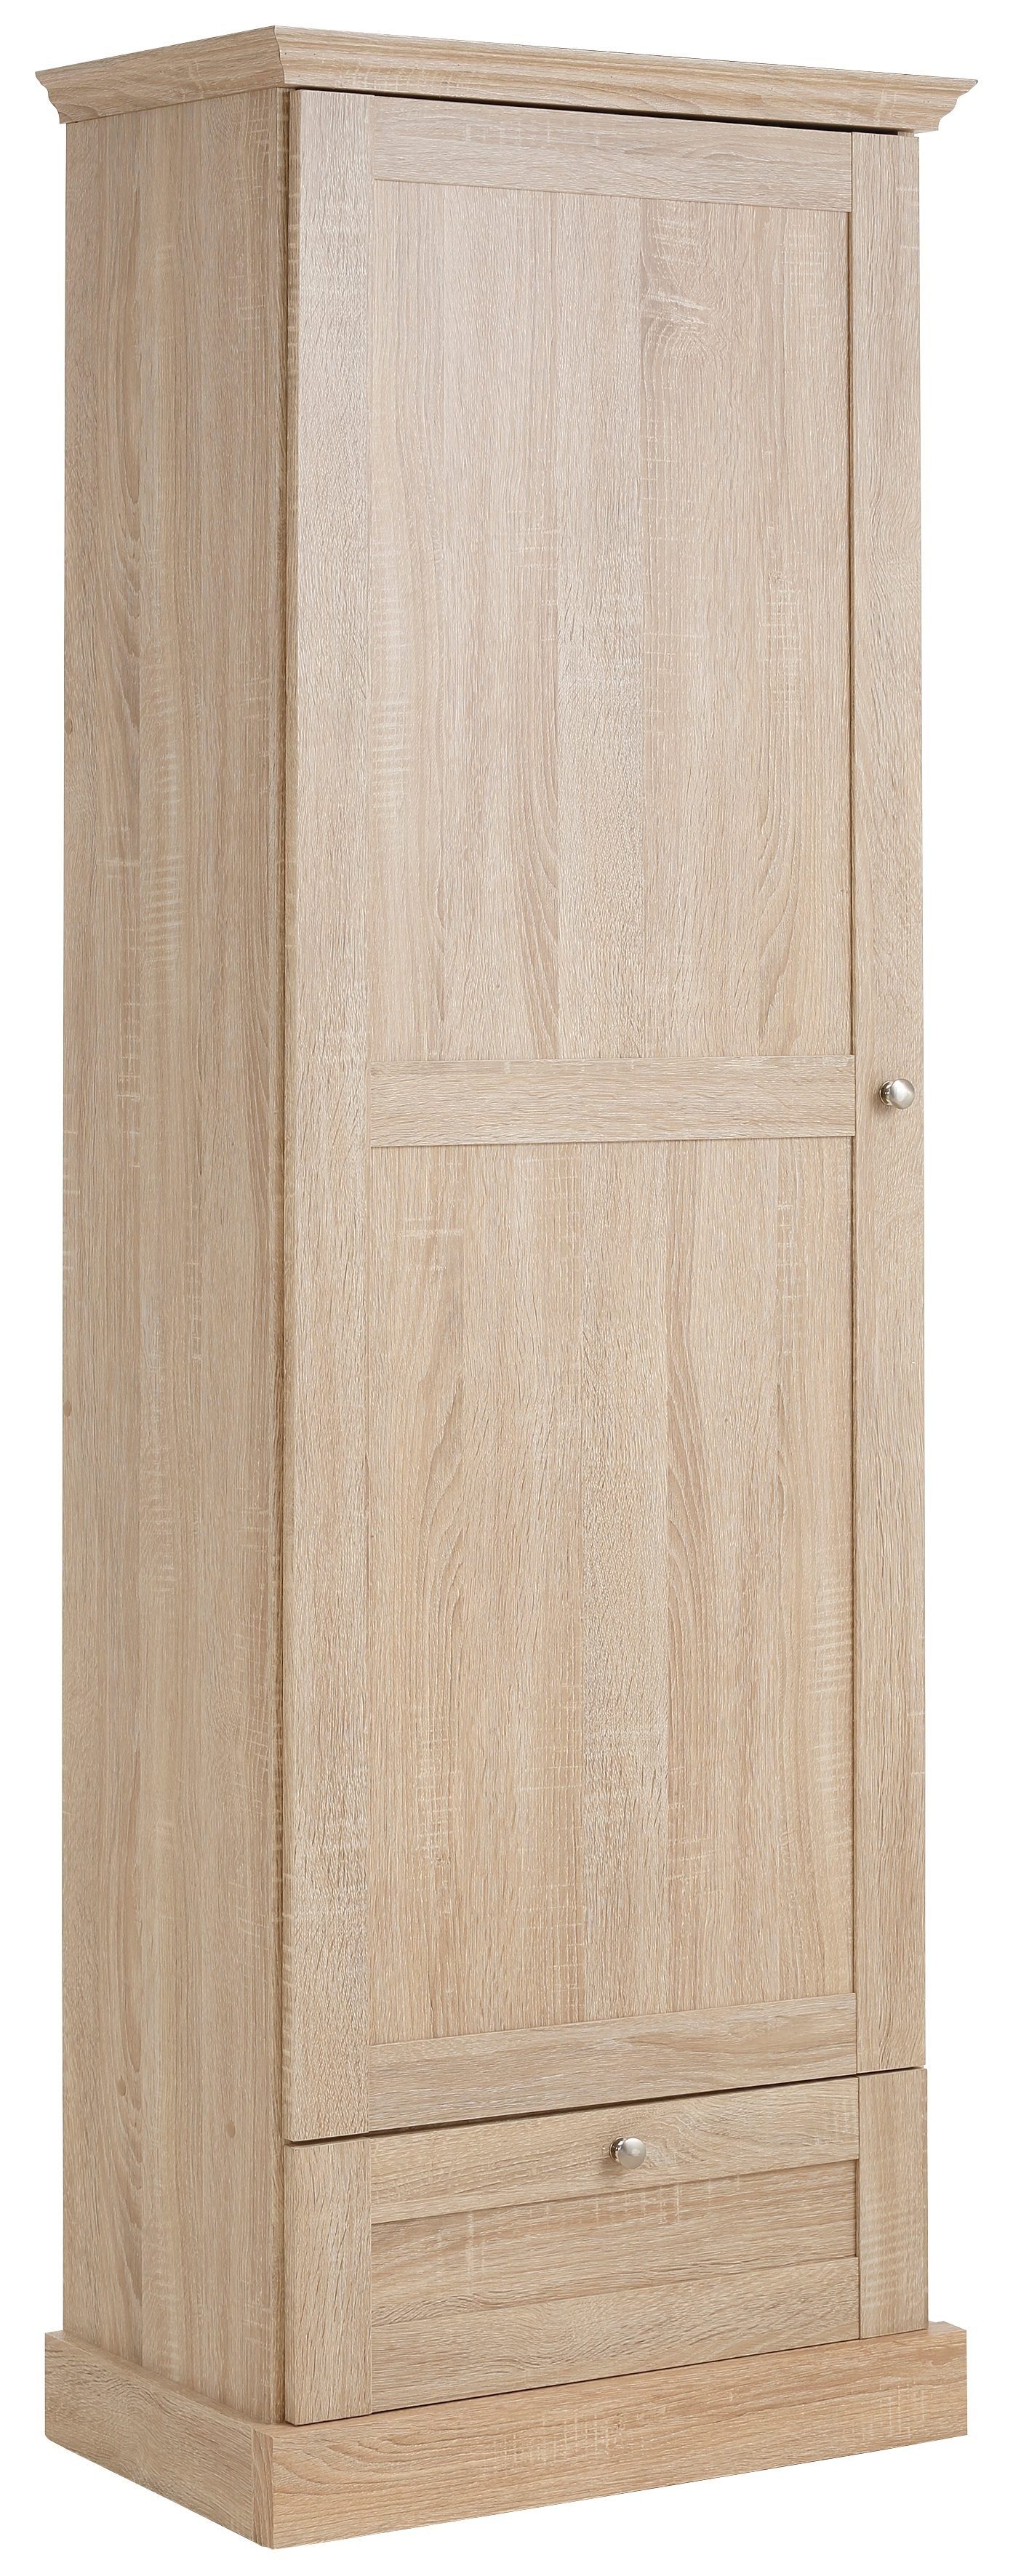 Home affaire Garderobenschrank Binz mit schöner Holzoptik, mit vielen Stauraummöglichkeiten, Höhe 180 cm sonoma/eichefarben